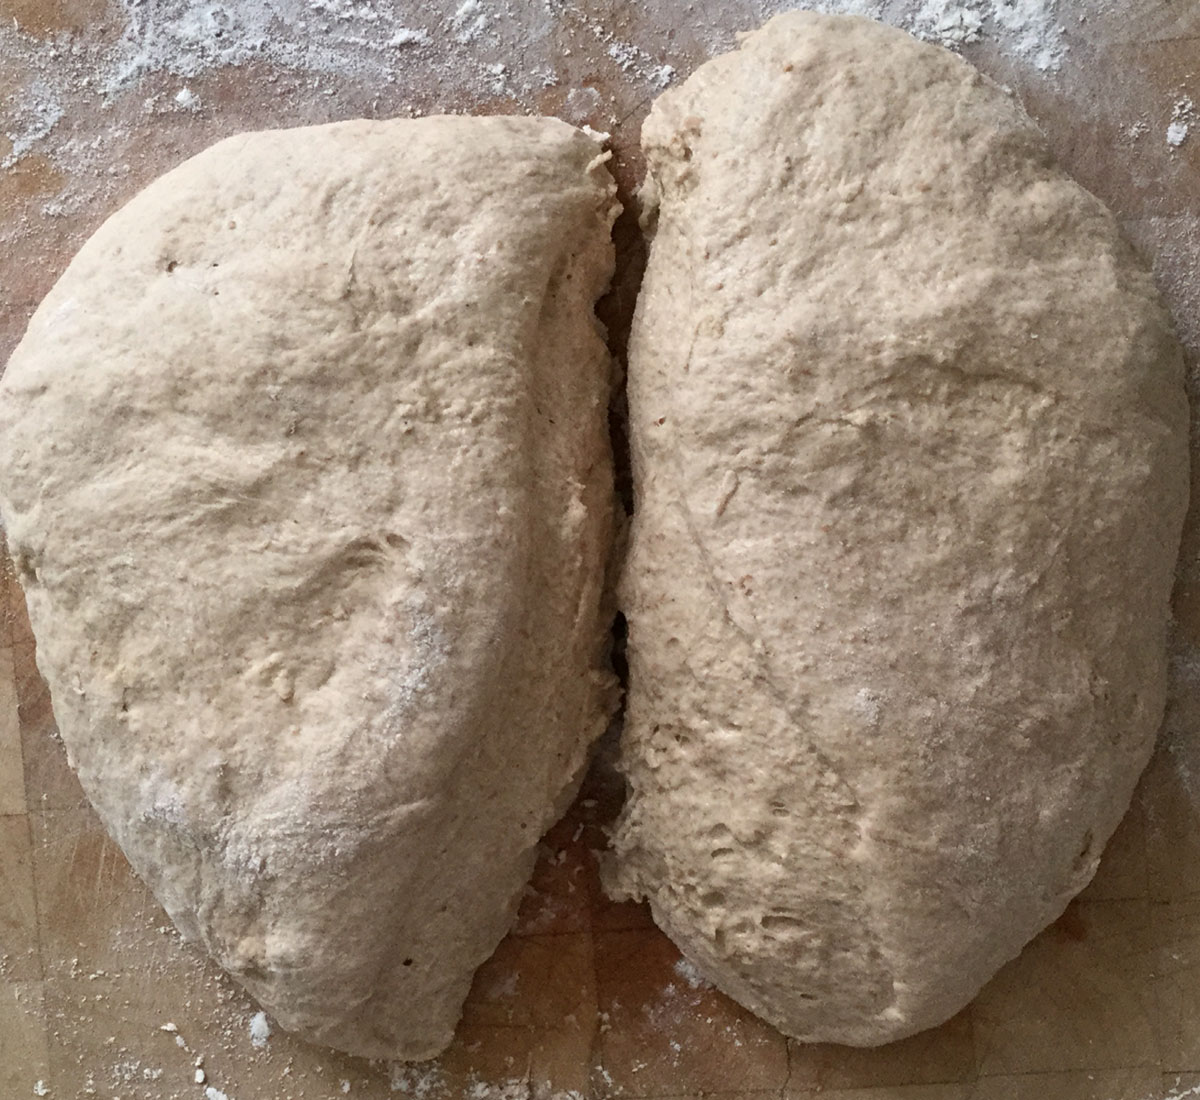 spelt-2-dough-loaves